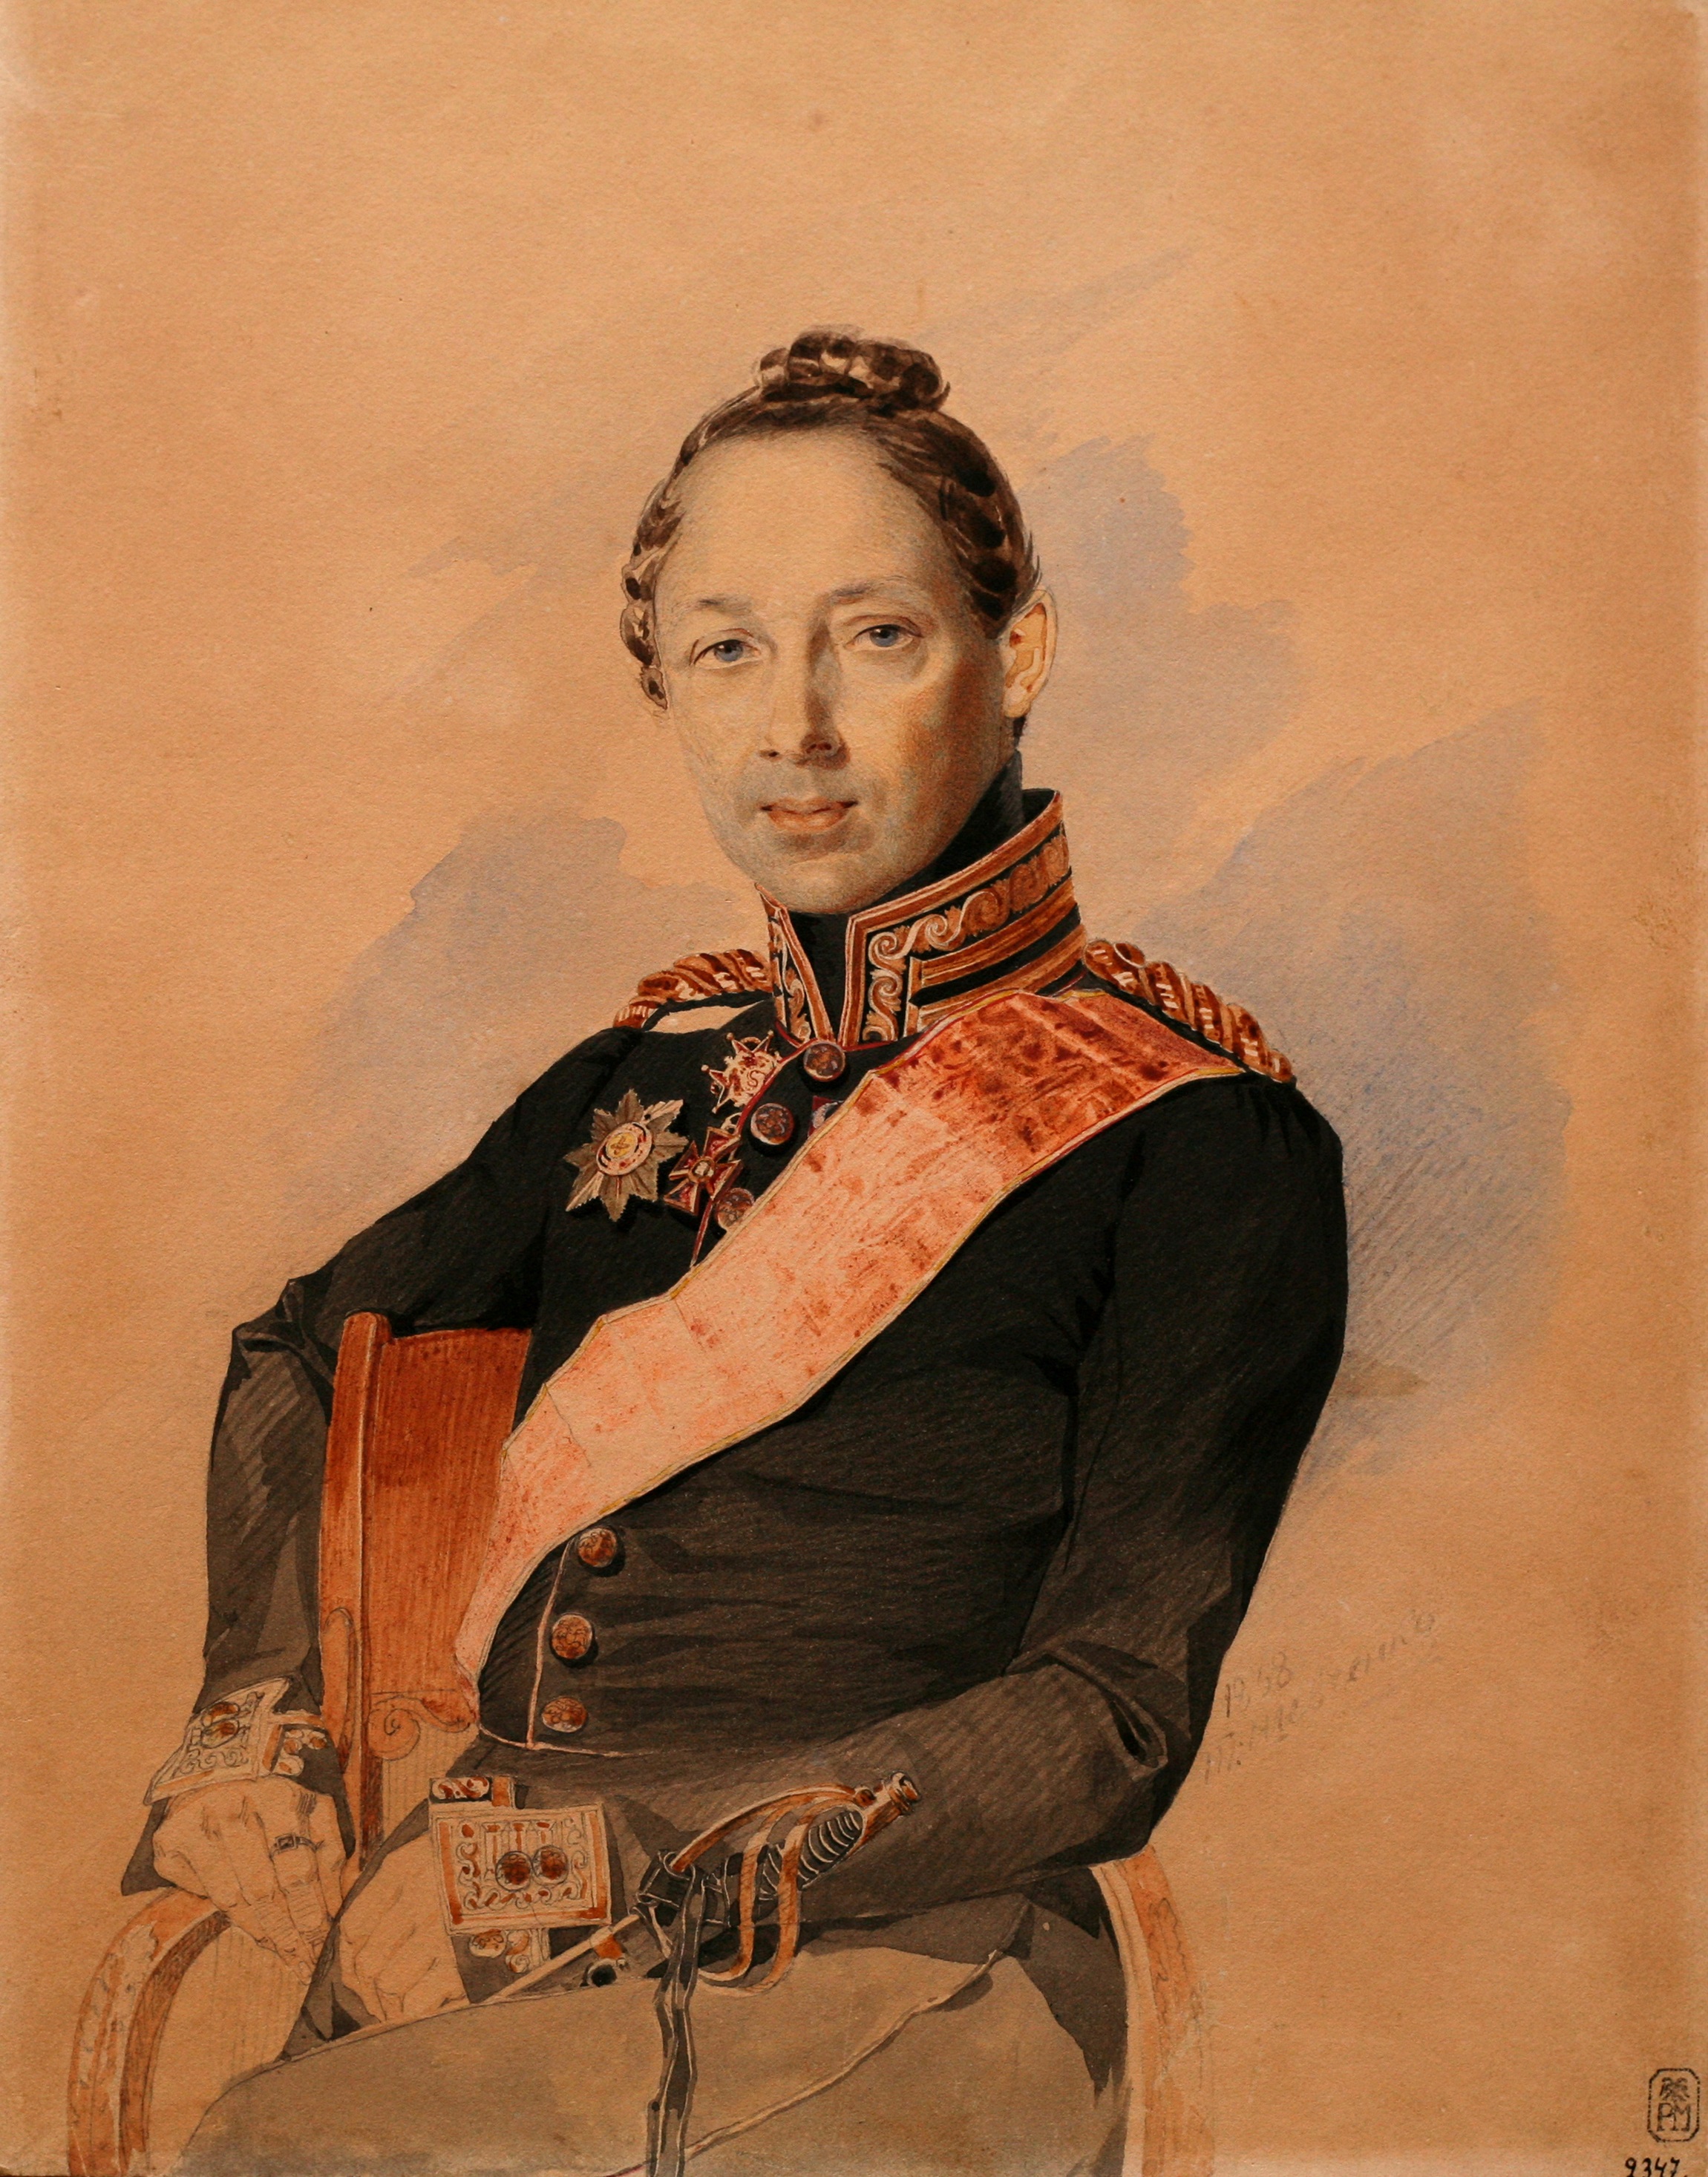 Portrait of Mykola Lunin, 1838, watercolour